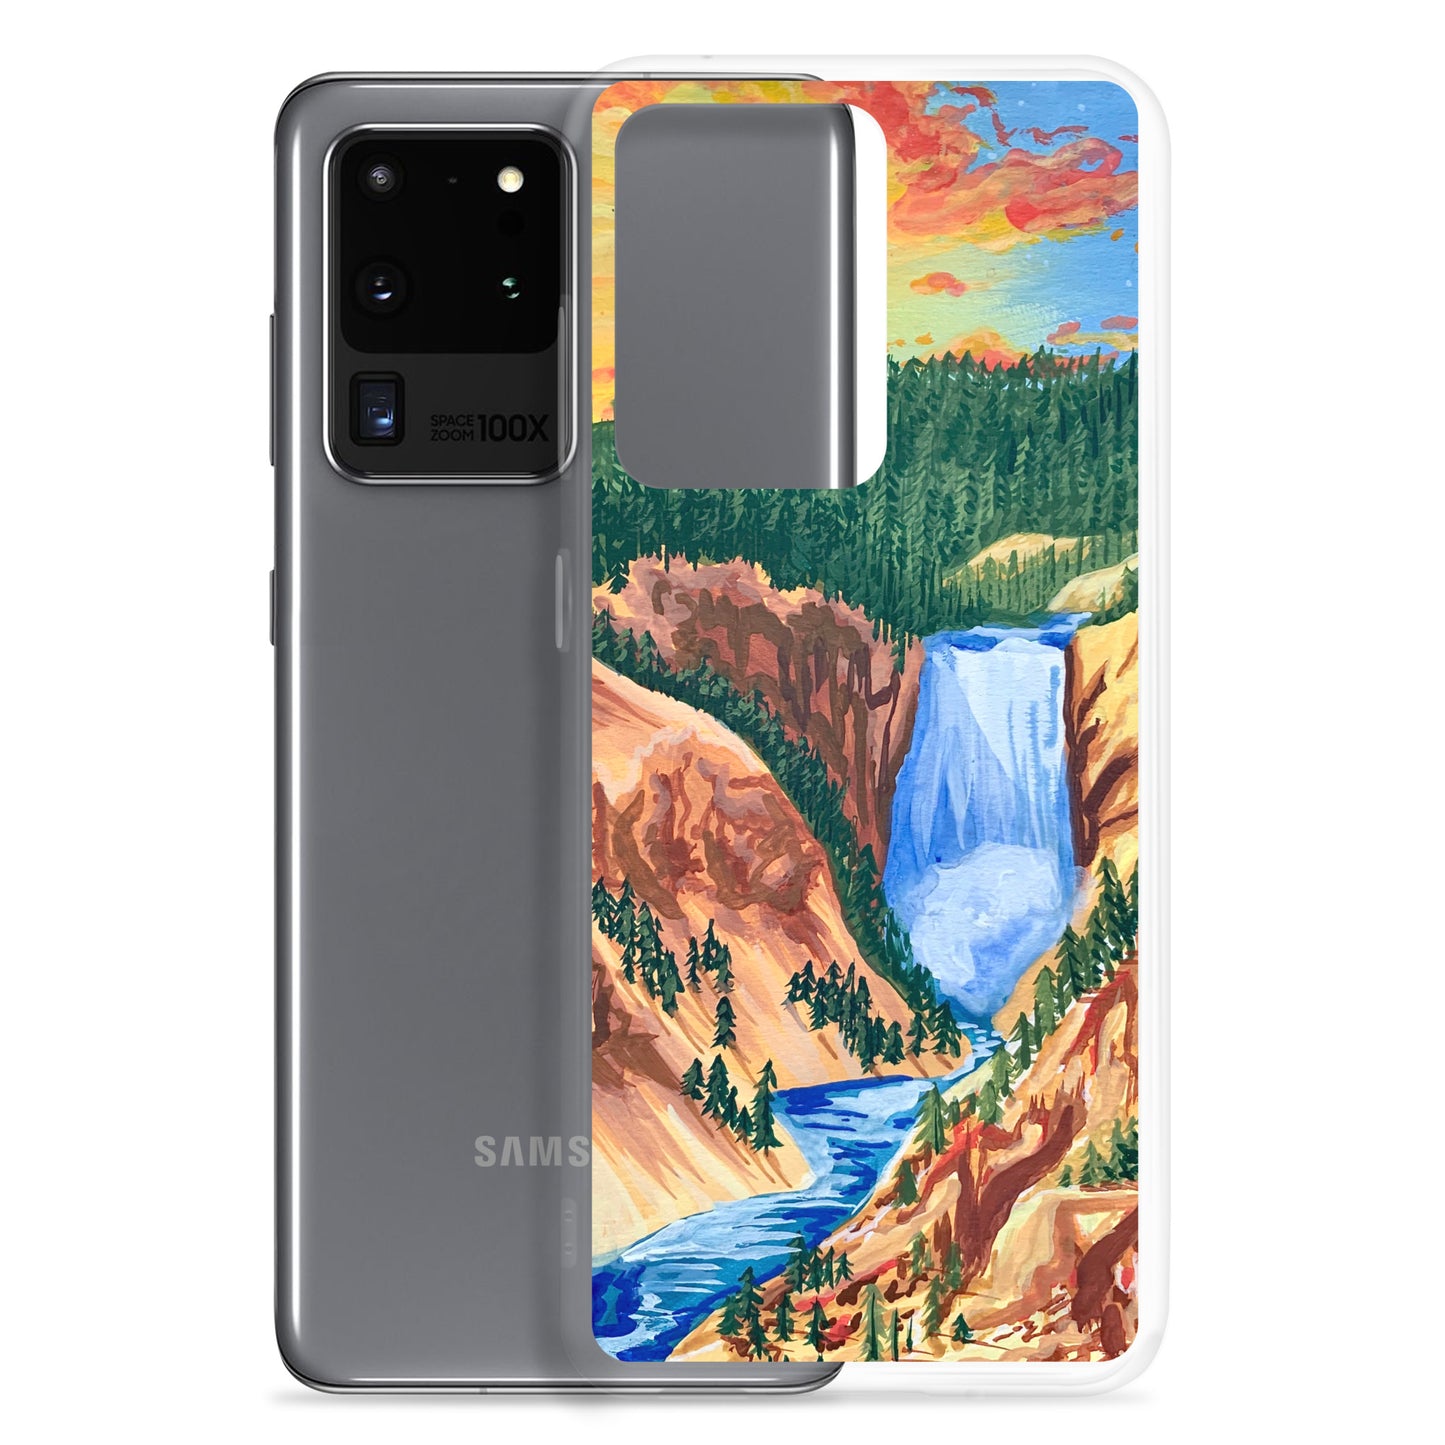 Glacier National Park Samsung Phone Case